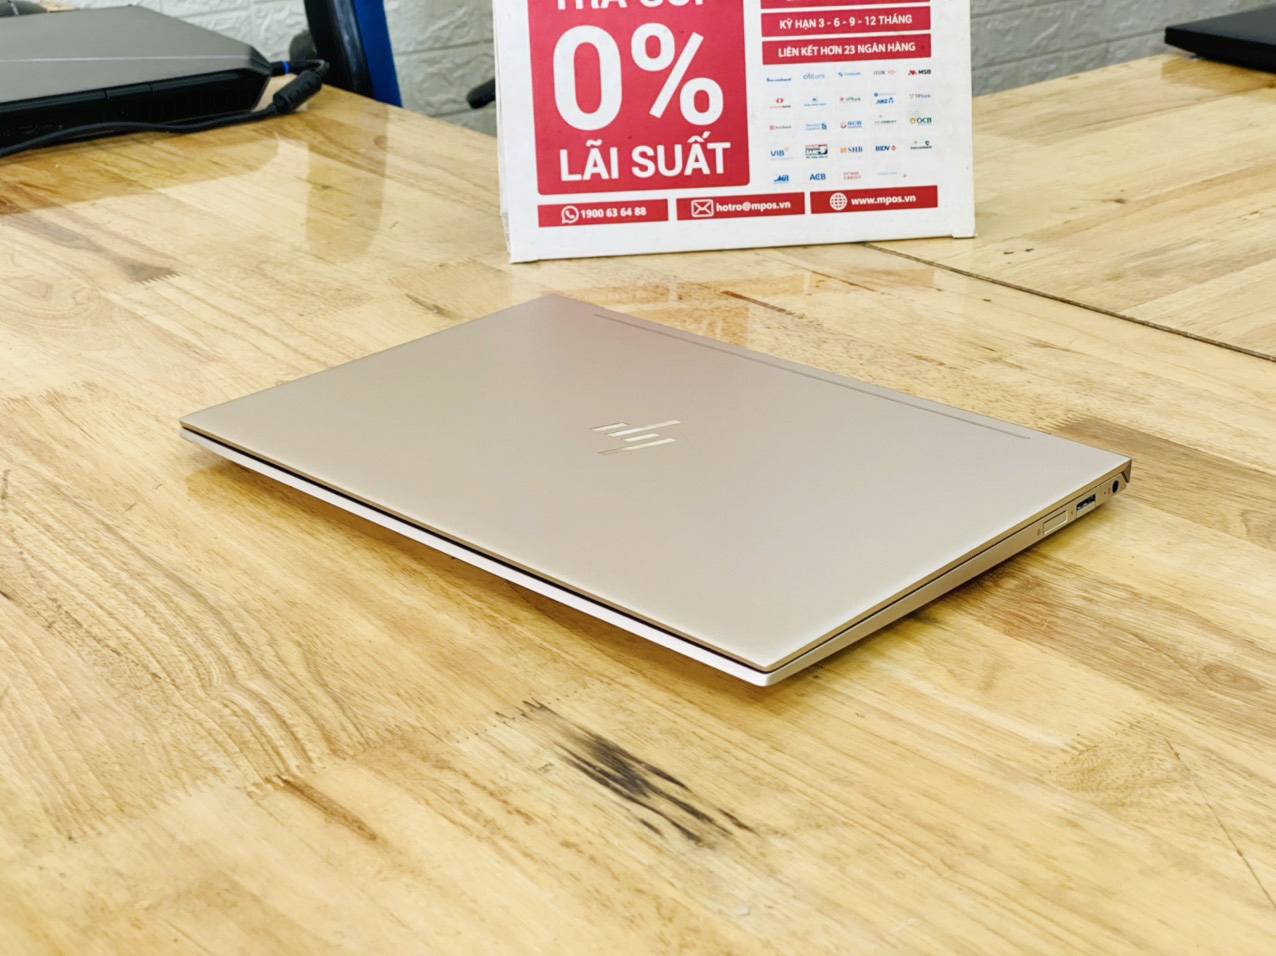 Laptop HP Envy 13-ah1011TU i5-8265U Ram 8G SSD 256G 13" Full HD Viền Mỏng Màu Gold Đời 2019